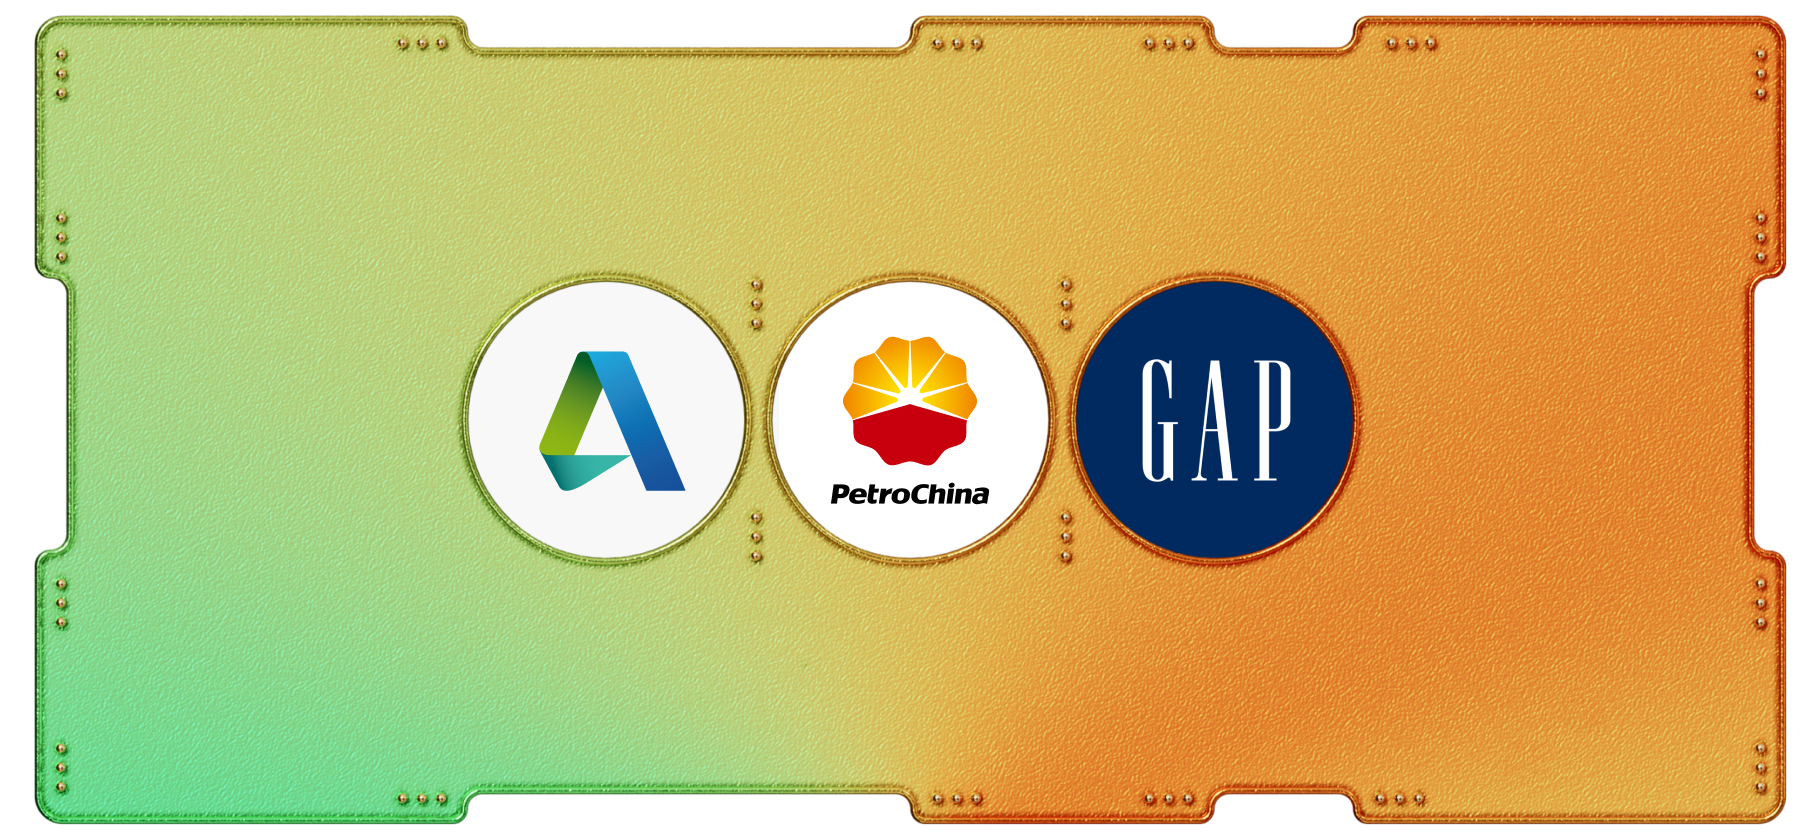 Календарь инвестора: Autodesk, PetroChina и Gap выпустят отчеты